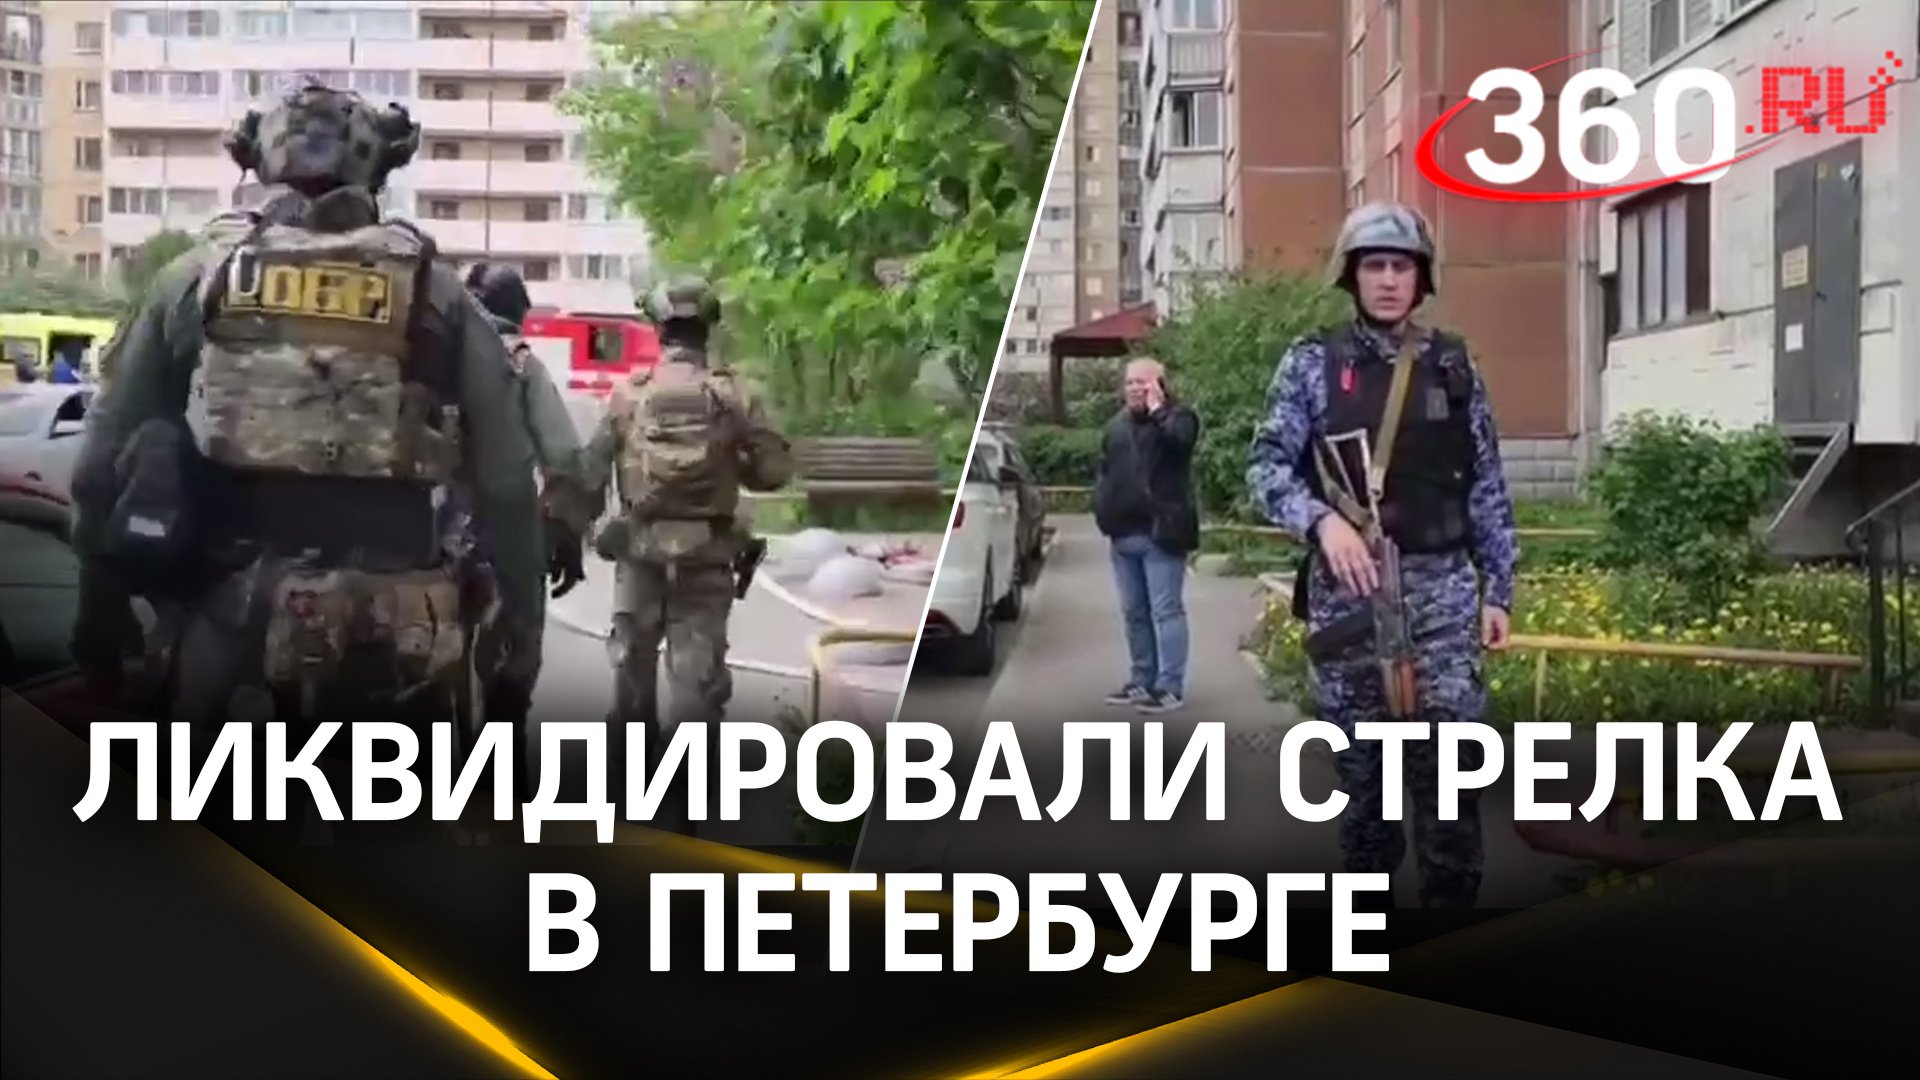 Полиция ликвидировала стрелка в Петербурге - видео штурма квартиры